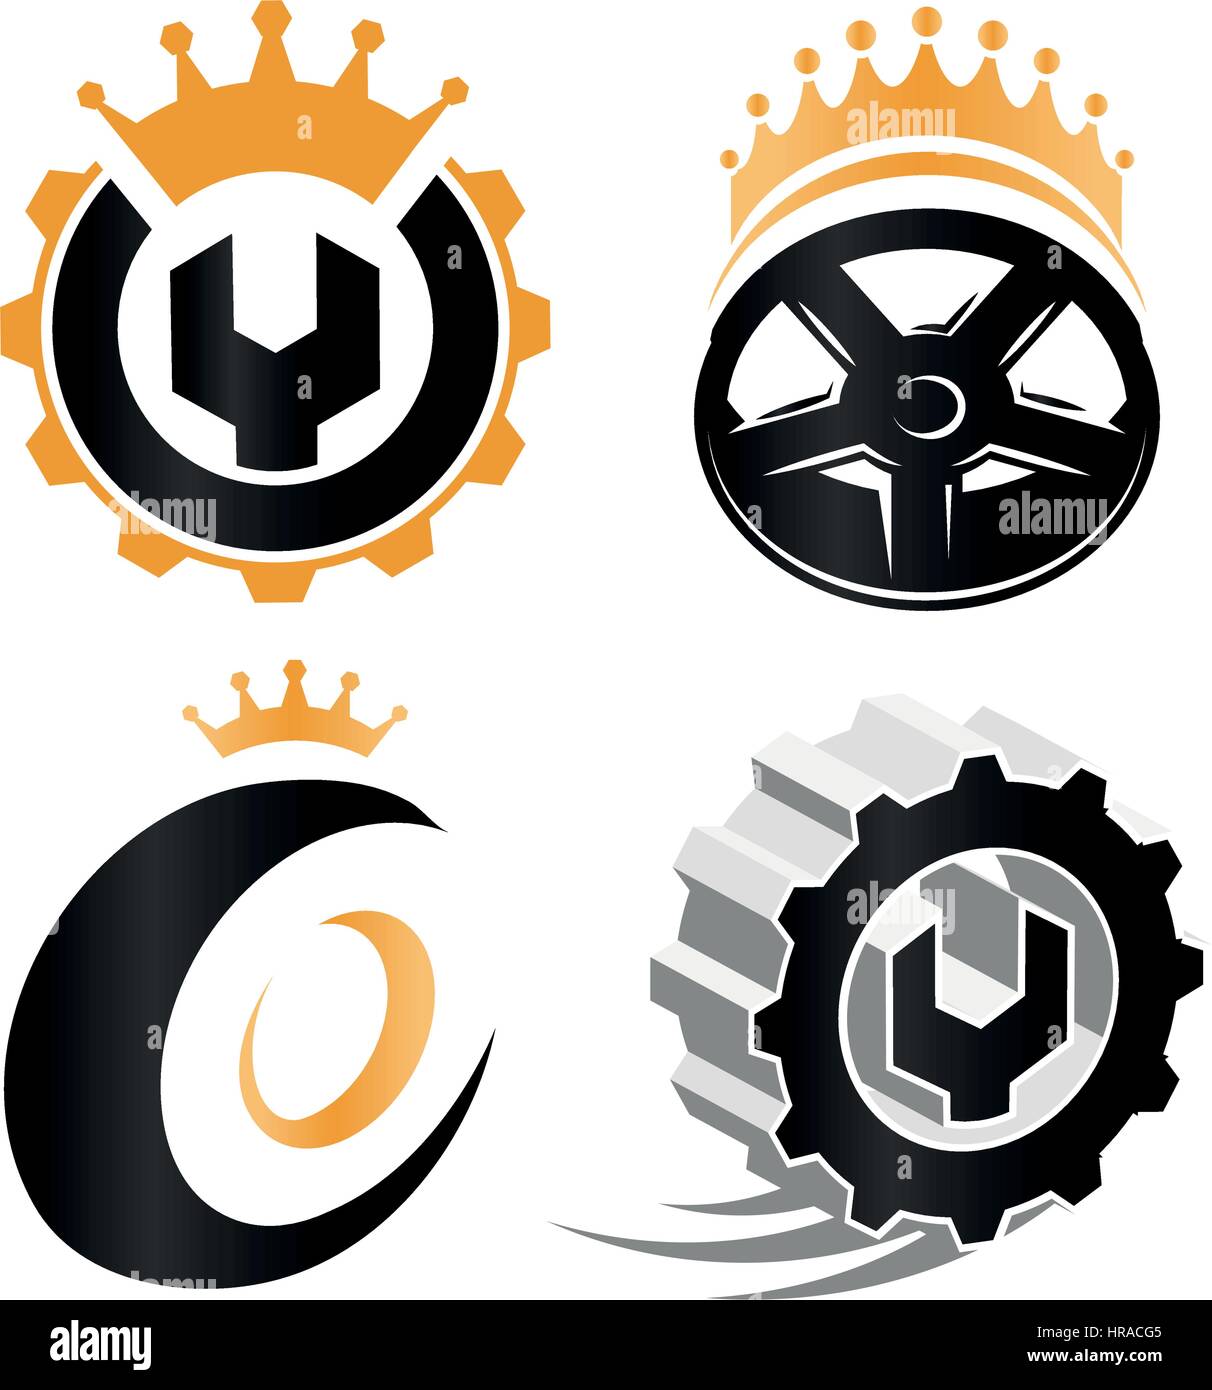 Isolierte abstrakte Reparaturservice details Logo Set, Auto-Räder-Elemente, mechanische Werkzeuge Vektor-Illustrationen Sammlung auf weiß. Stock Vektor